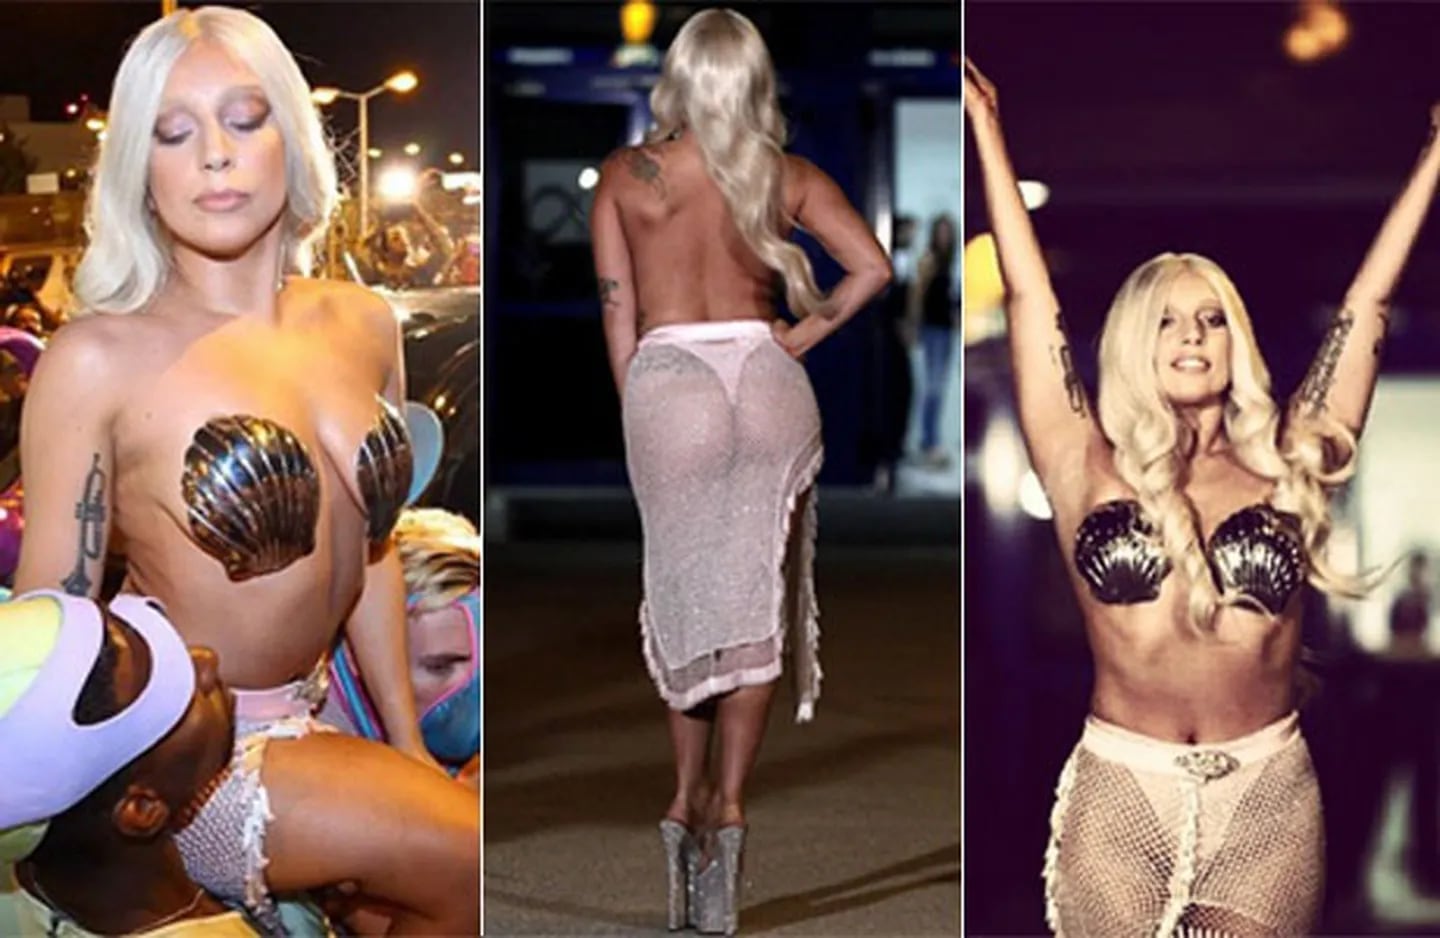  Lady Gaga jugó a ser una diosa griega nudista en su concierto en Atenas (Foto: Instagram)